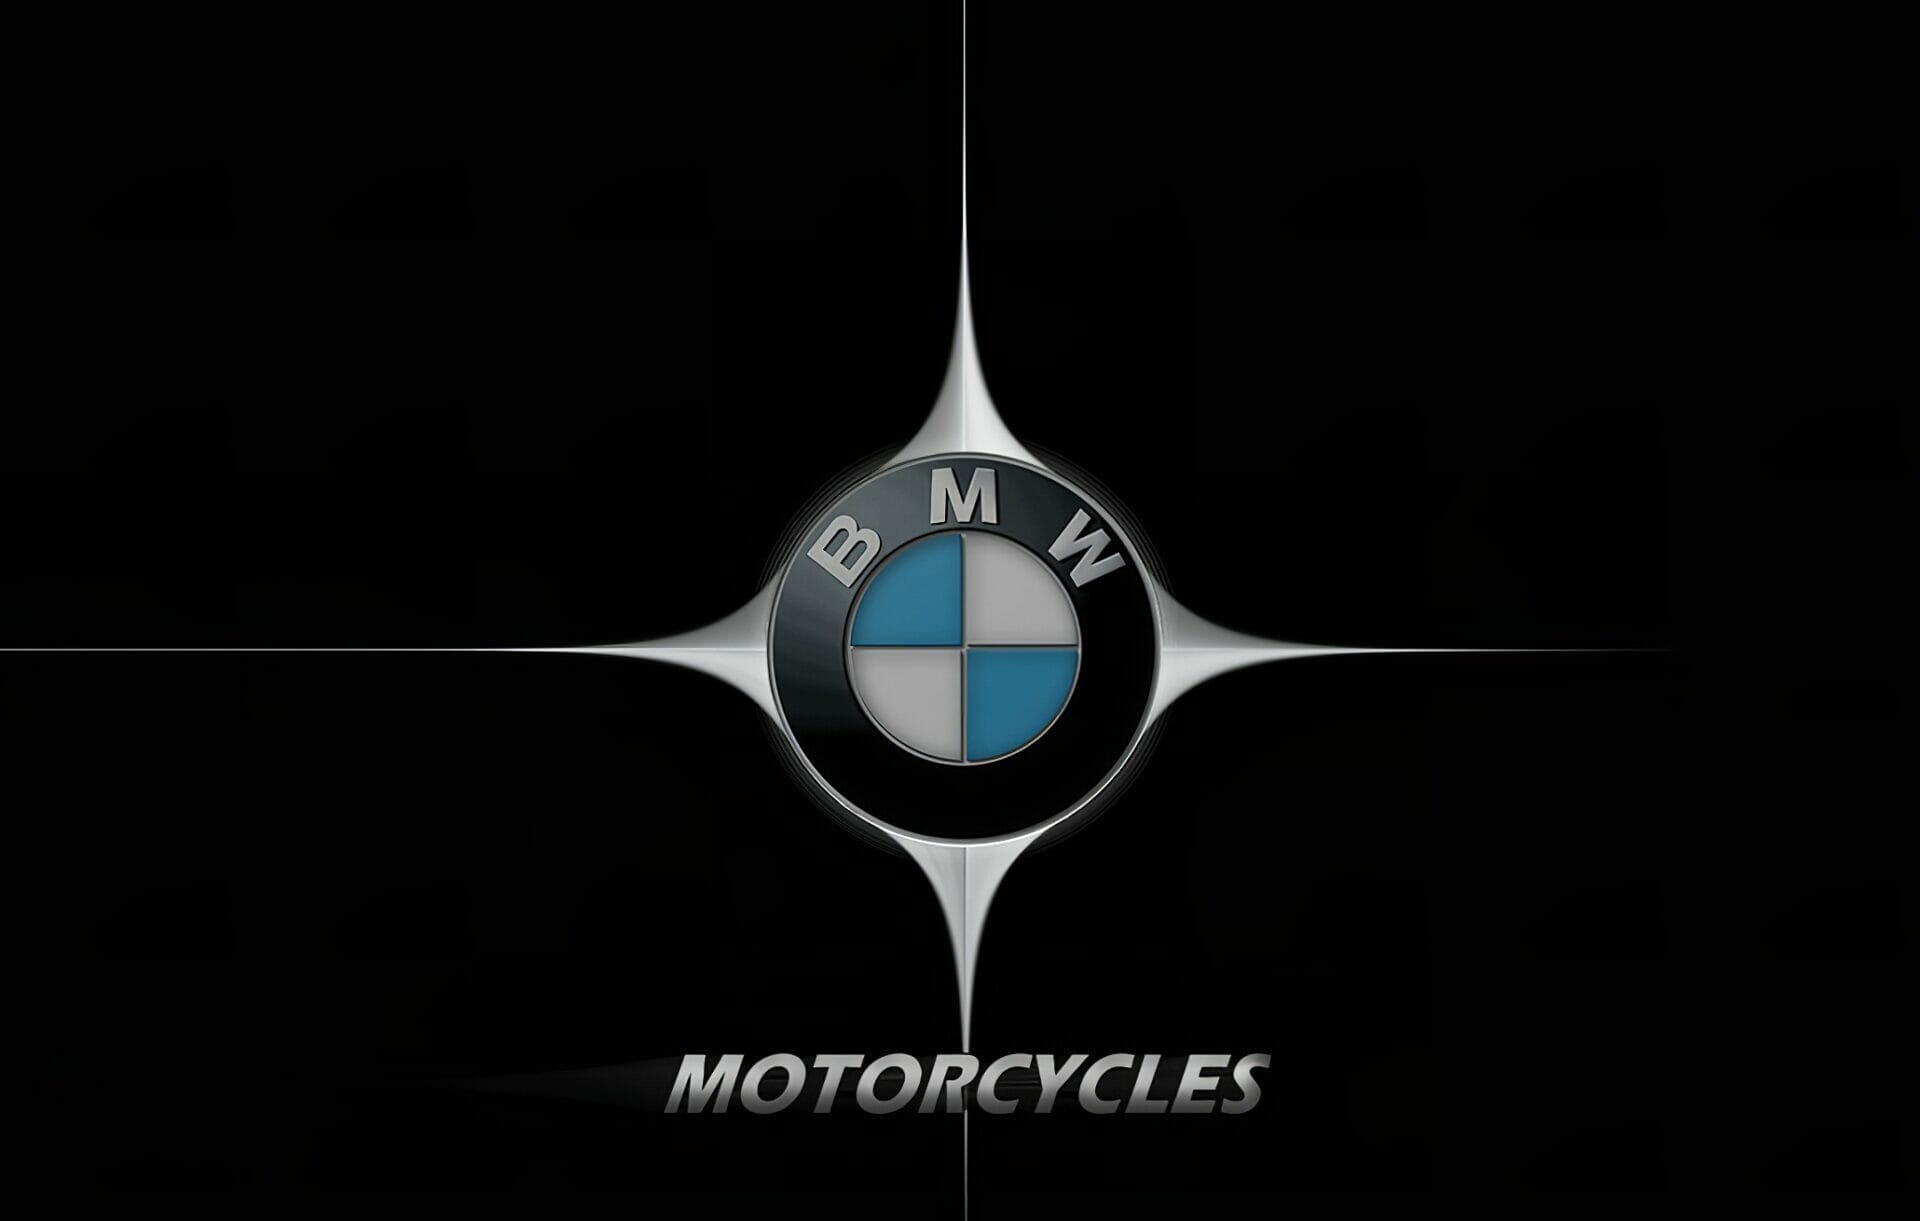 BMW Motorrad: Die Marke. Die Modelle. Die Technik